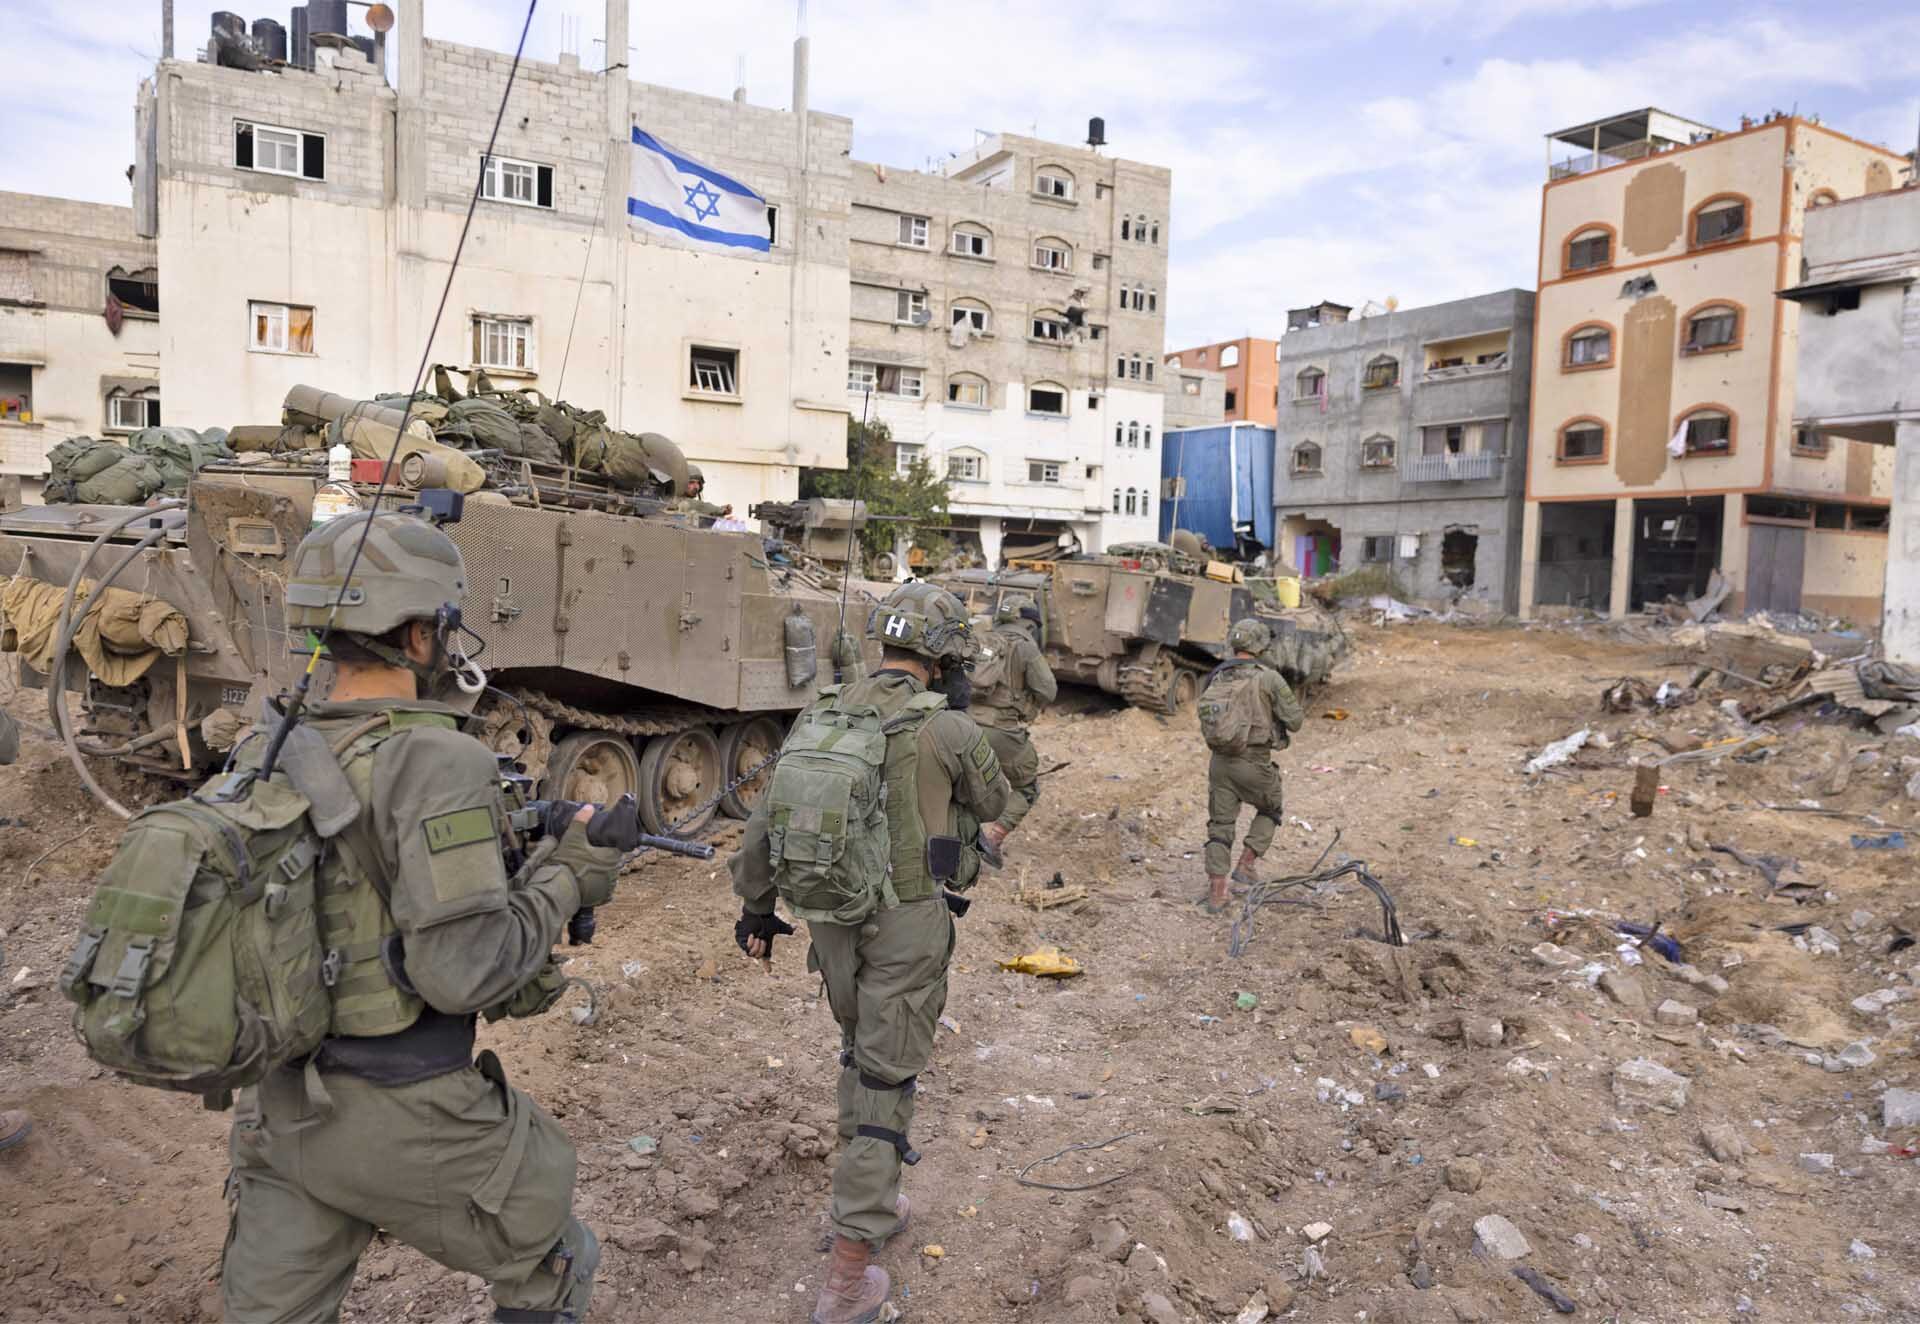 ทัพอิสราเอล “ถล่มไม่ยั้ง” เมินกองกำลังฮามาสข่มขู่ตัวประกันชาวยิว “จะไม่รอดชีวิต”